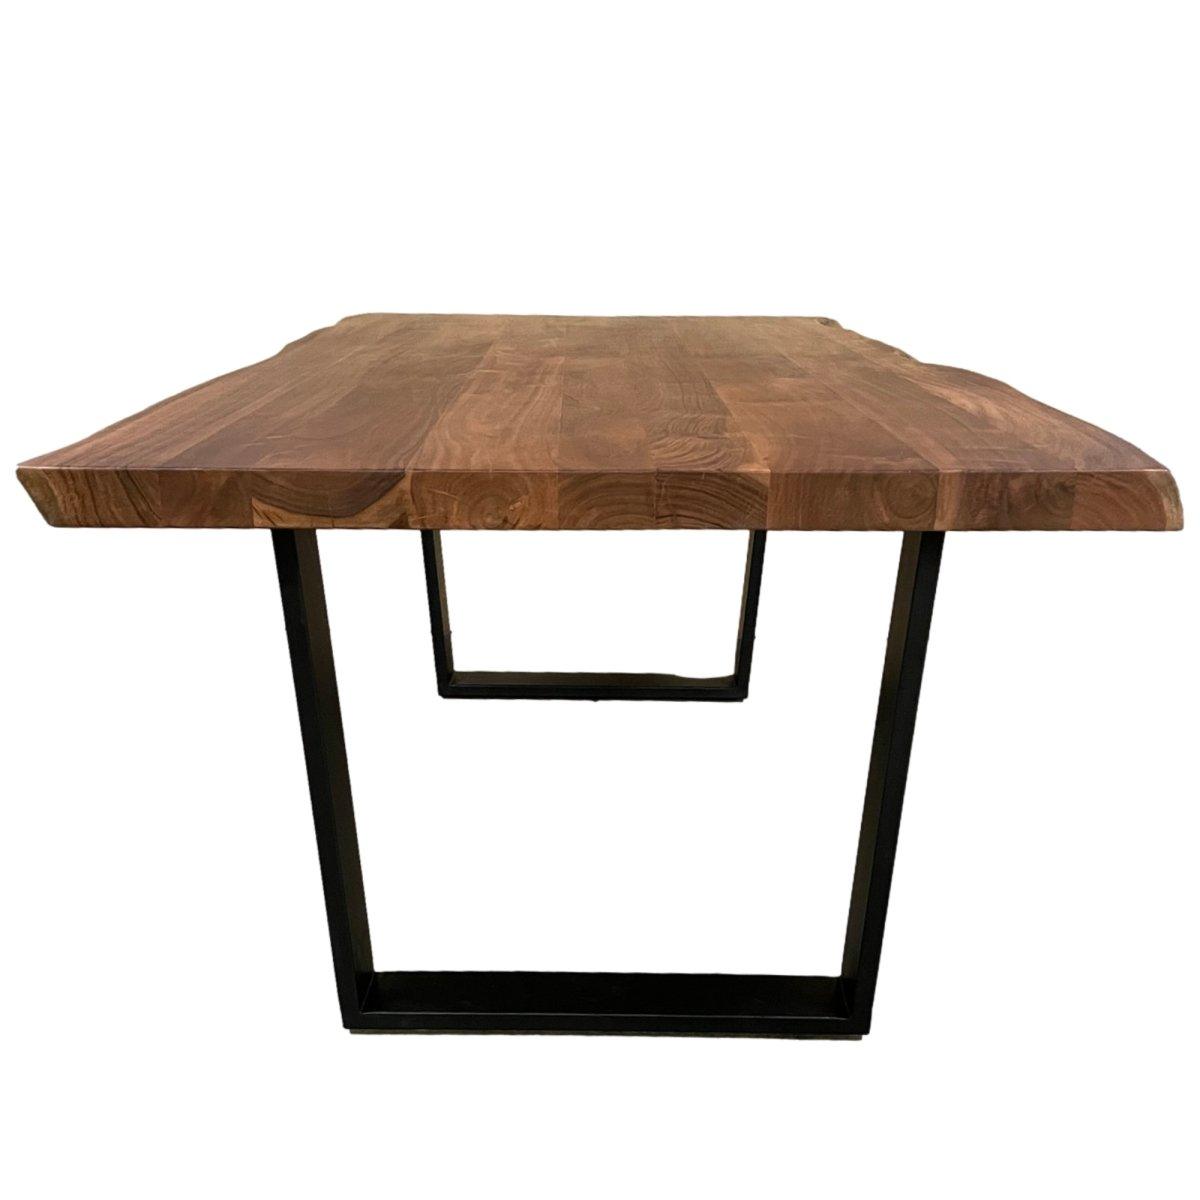 Desa live edge table à manger en bois d'acacia pieds en U noirs - Rustic Furniture Outlet